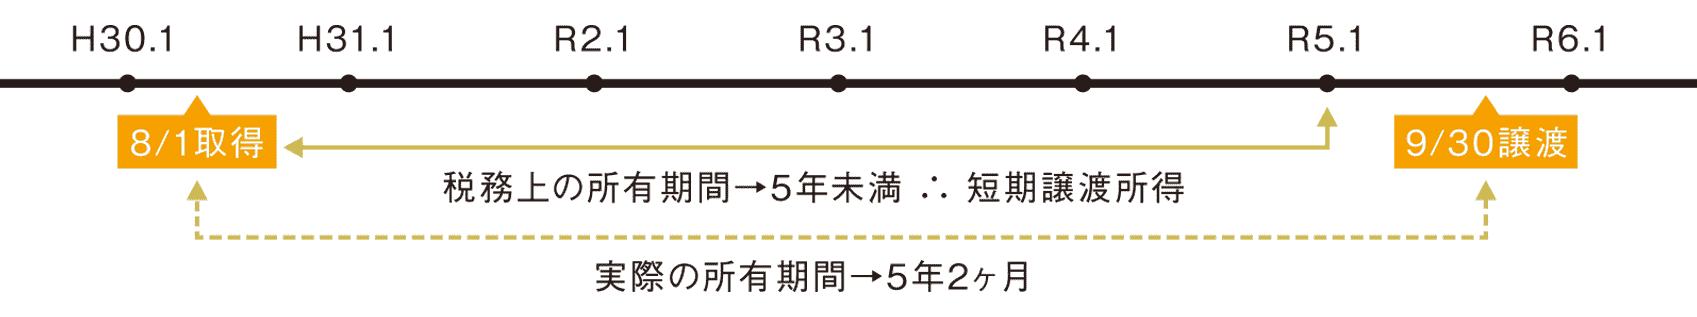 myhome-baikyaku-jyotosyotoku-4